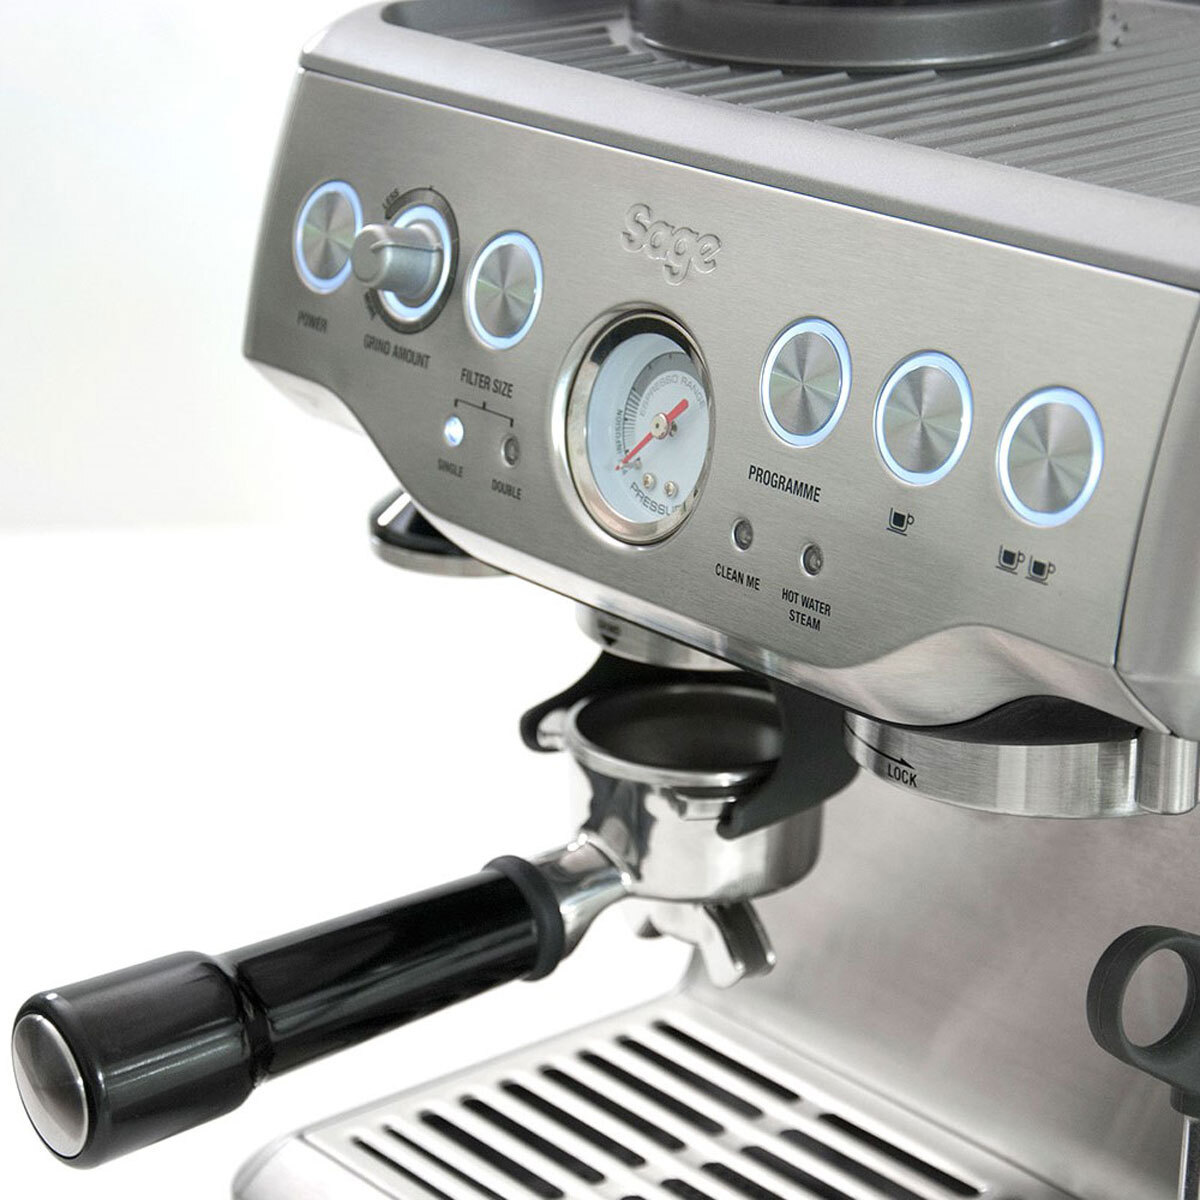 Sage Barista Express Espresso Coffee Machine BES875UK